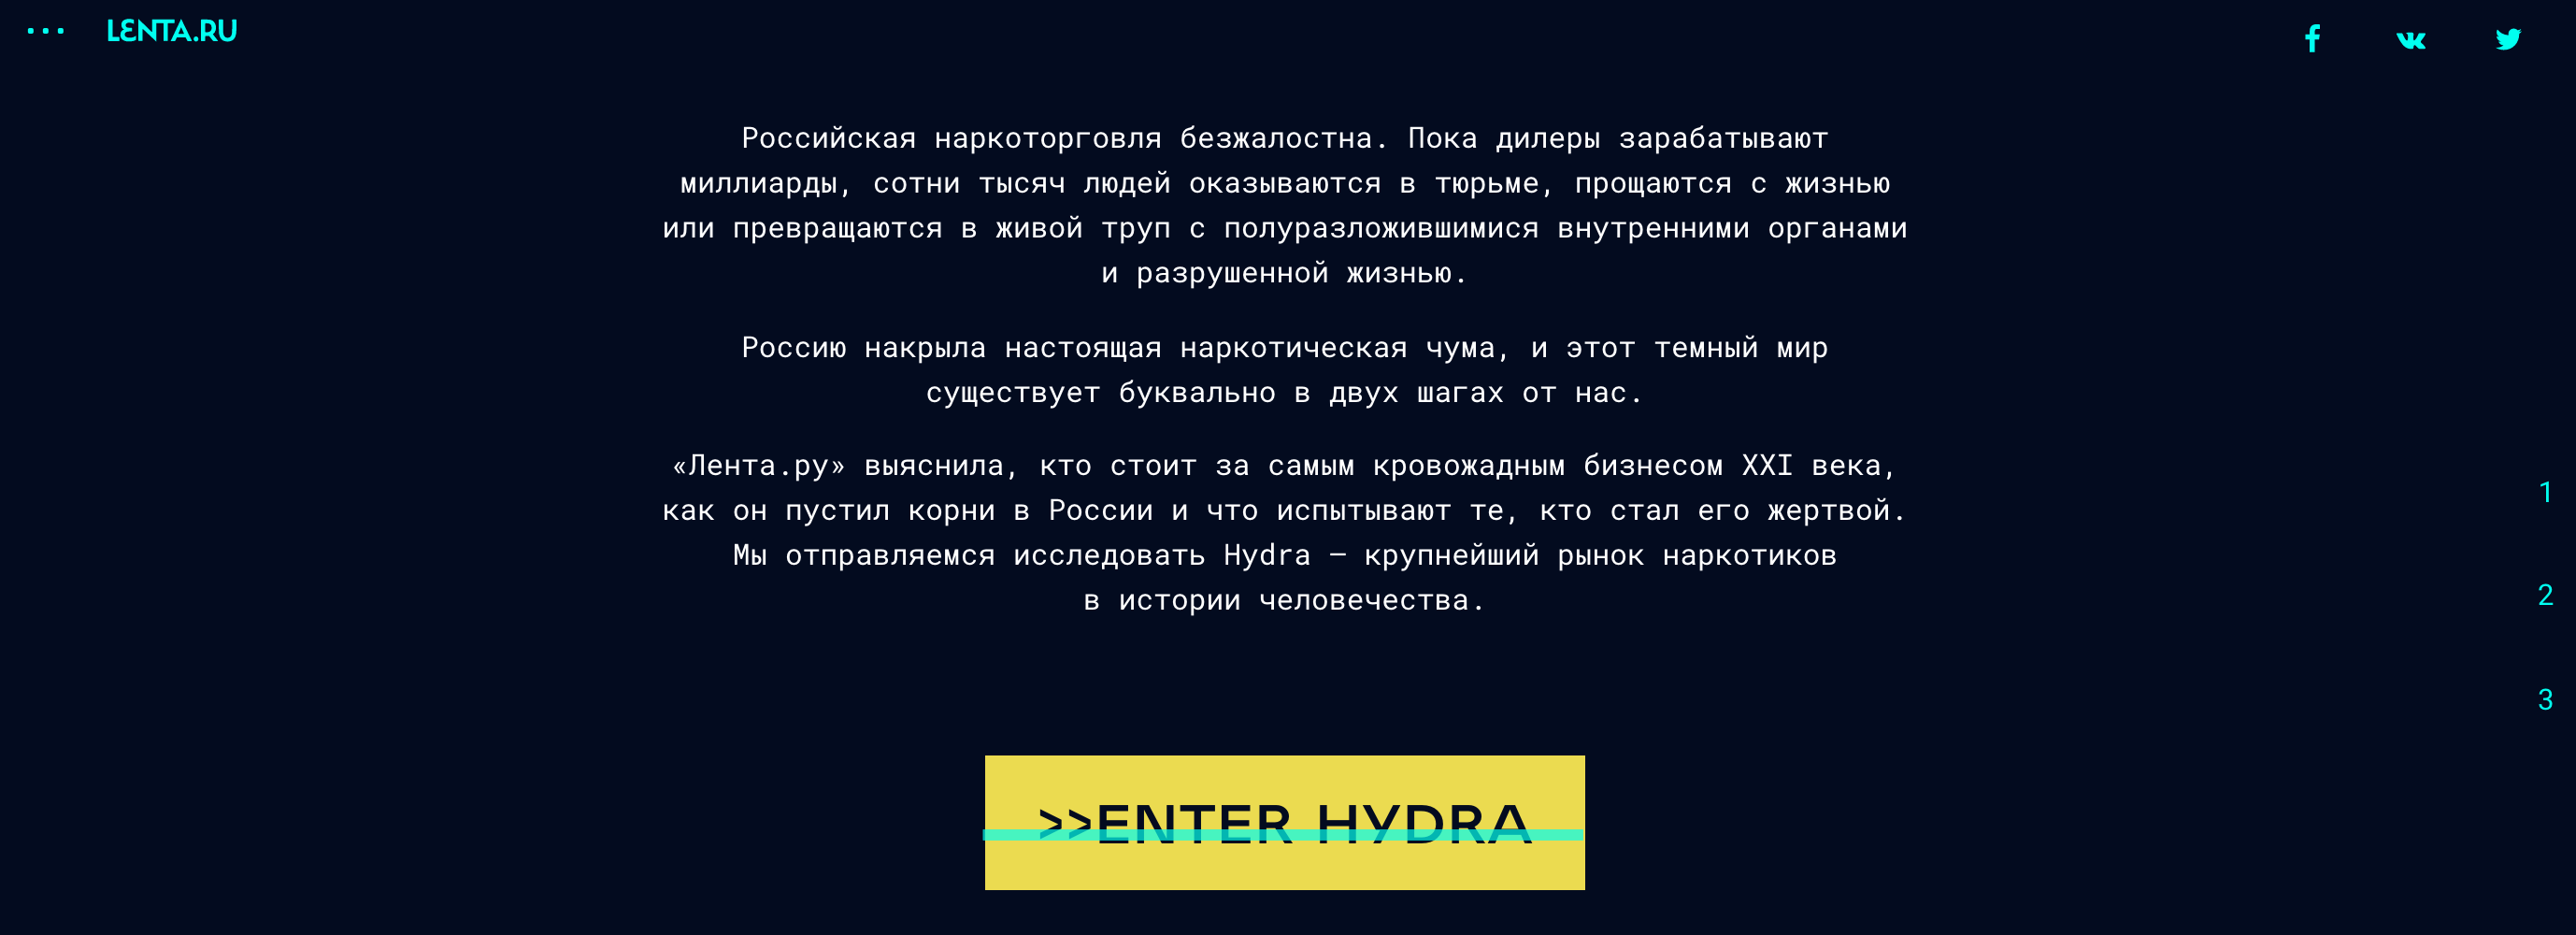 Darknet лента ру hidra tor browser как сделать русский язык гидра